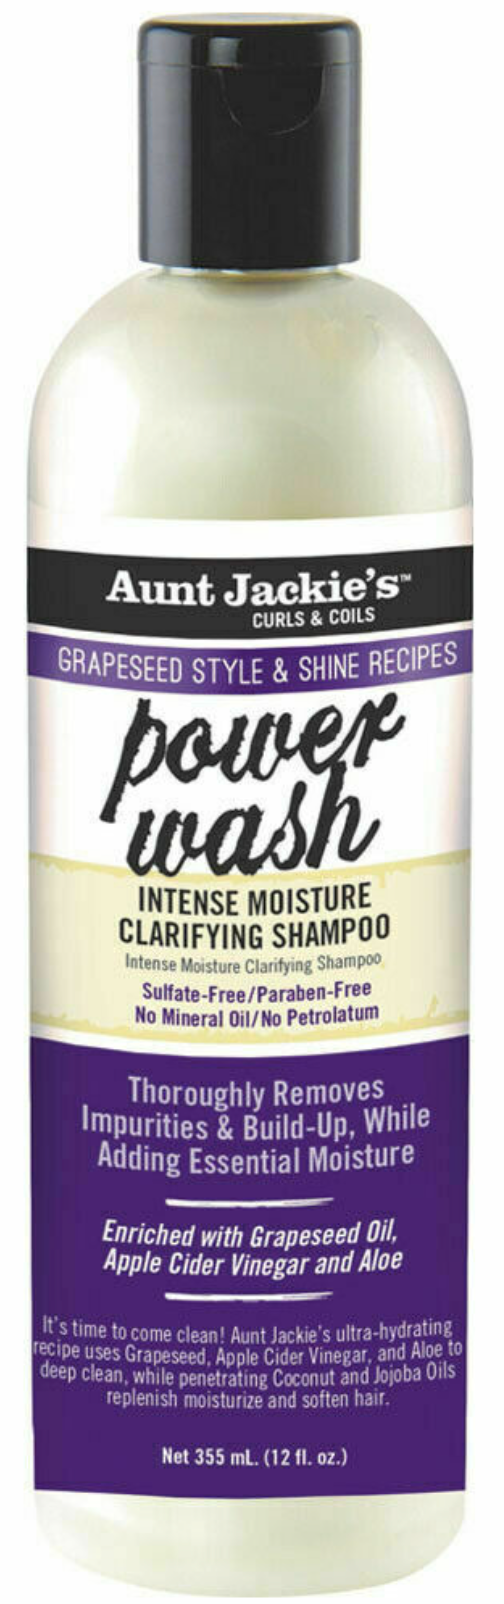 Aunt Jackie’s Power Wash Shampoo 12oz